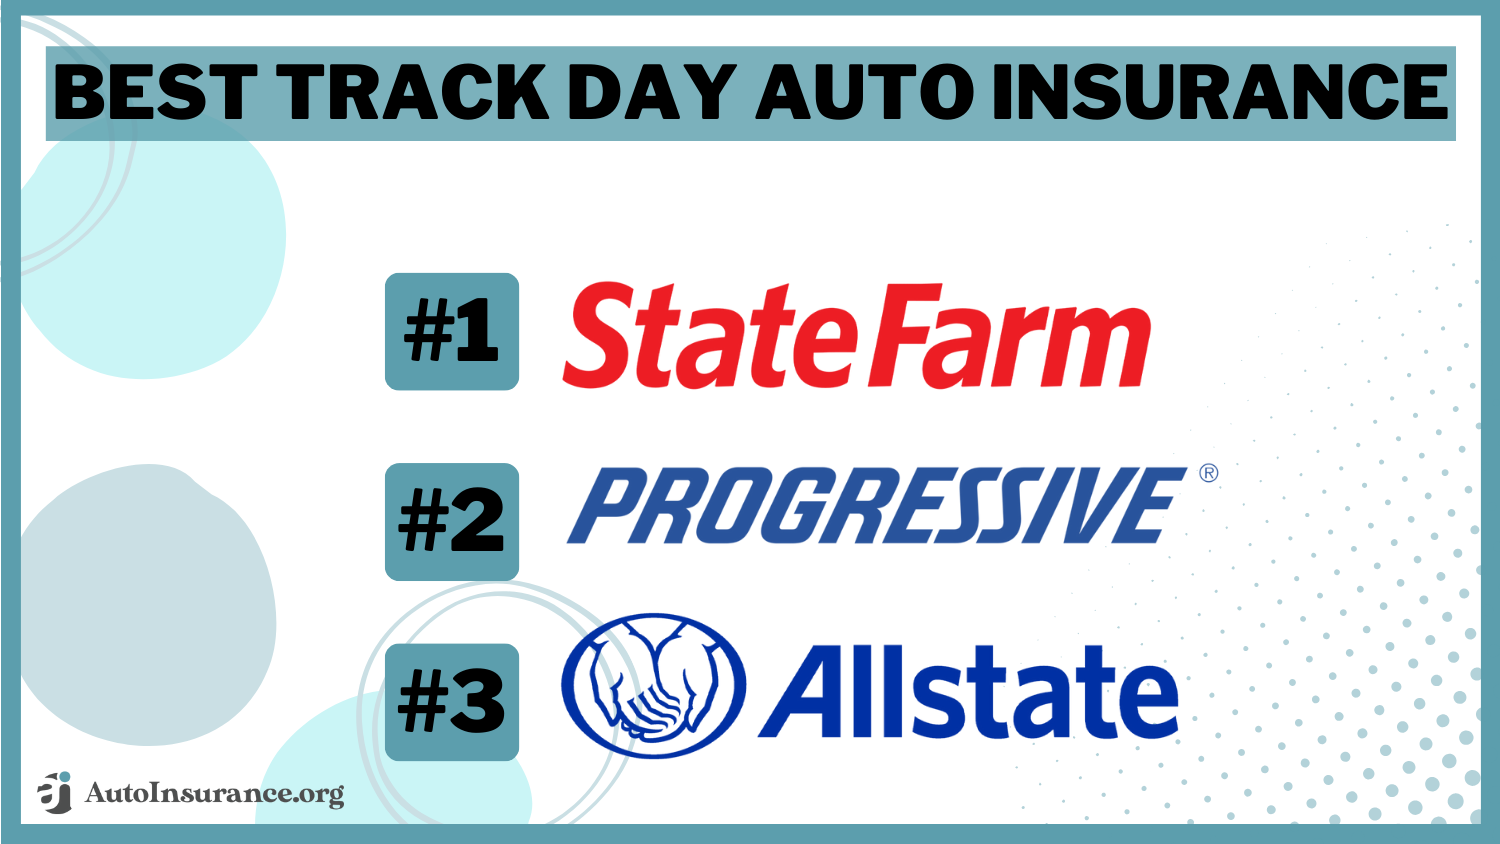 Best Track Day Auto Insurance: State Farm, Progressive, and Allstate